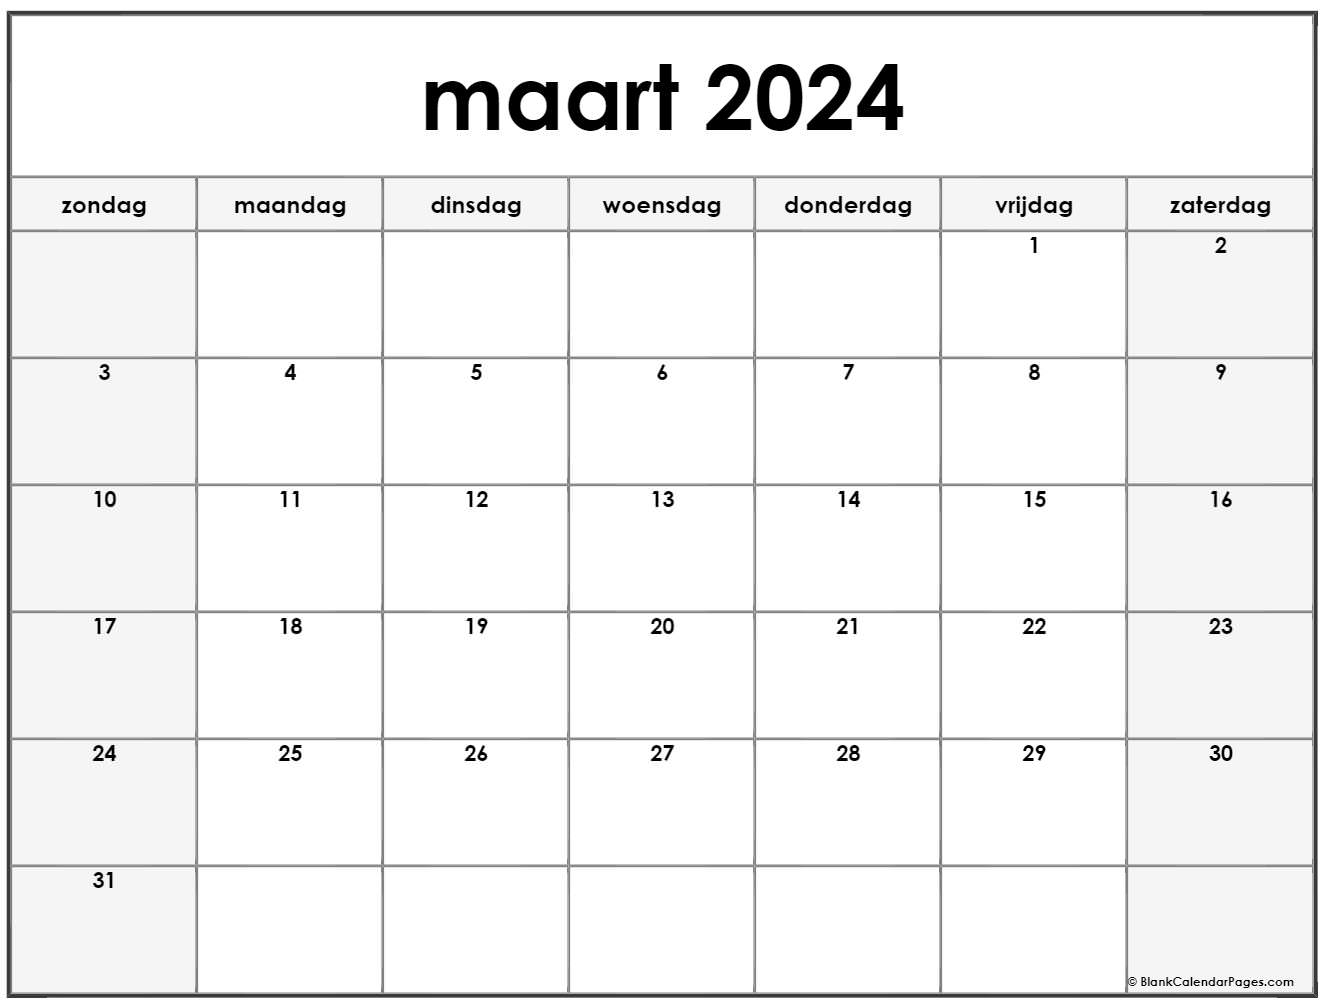  maart  2022  kalender  Nederlandse Kalender  maart 